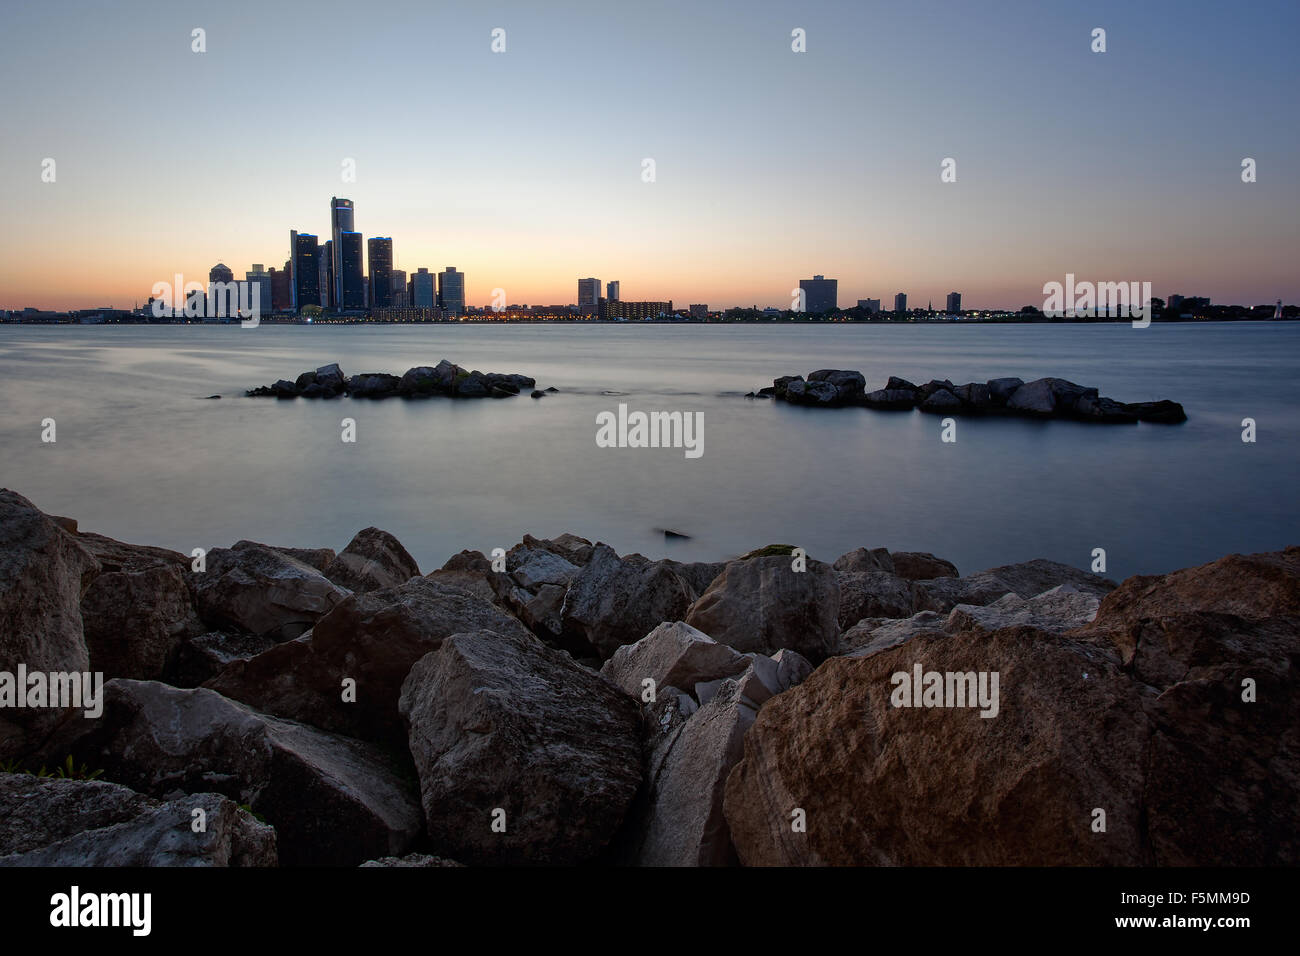 Ein Landschaftsbild von den Detroit River und Detroit, Skyline der Stadt von Windsor, Ontario Kanada Stockfoto